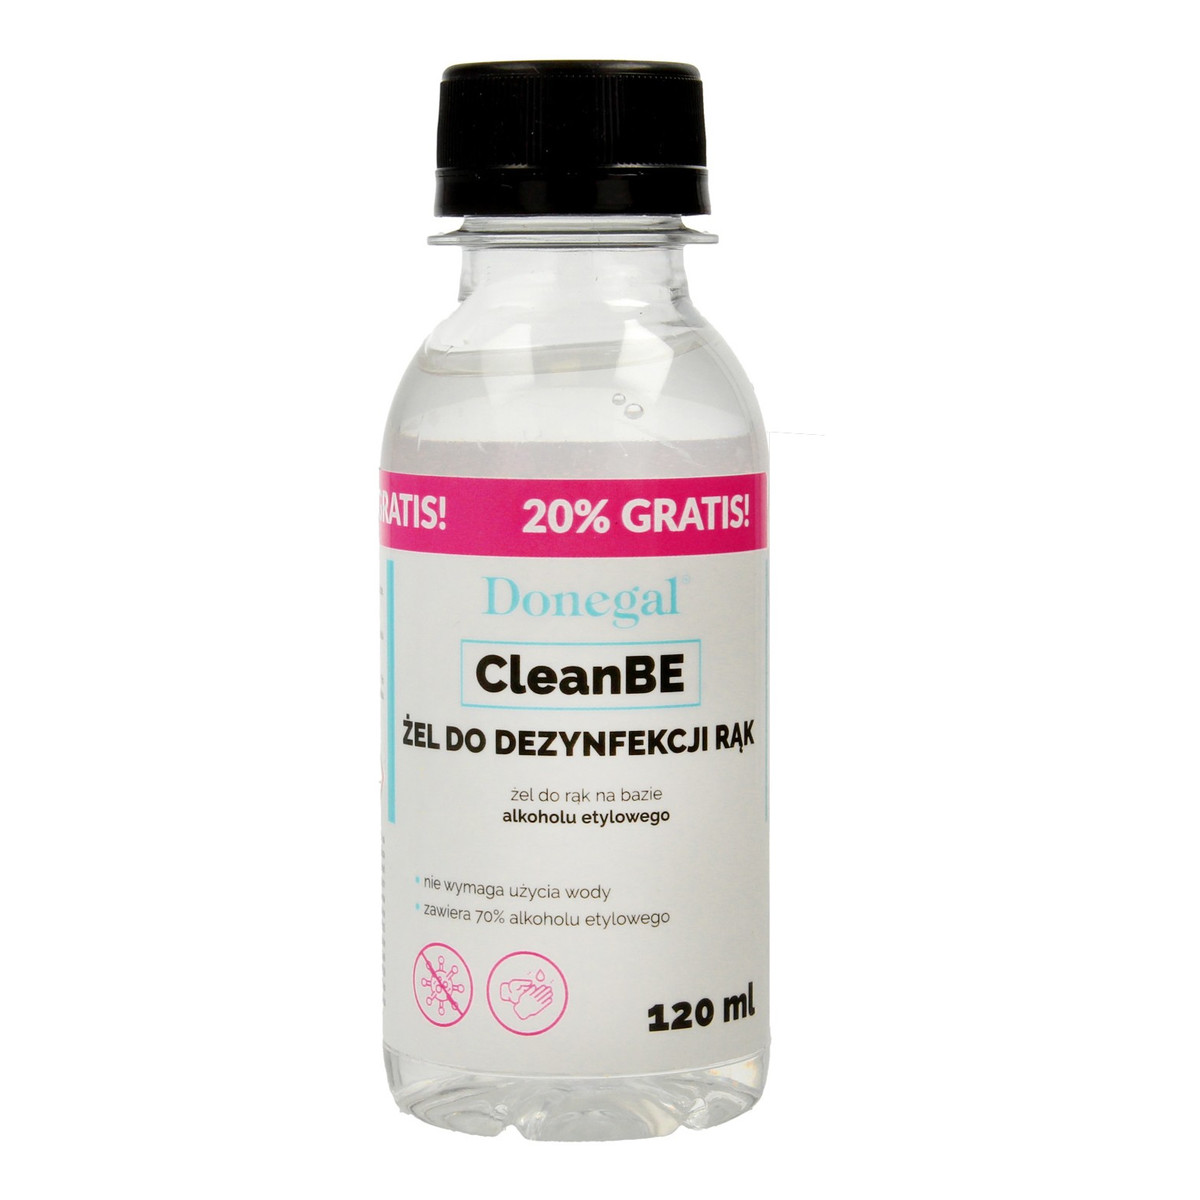 Donegal CleanBE Żel do dezynfekcji rąk (7058) 120ml